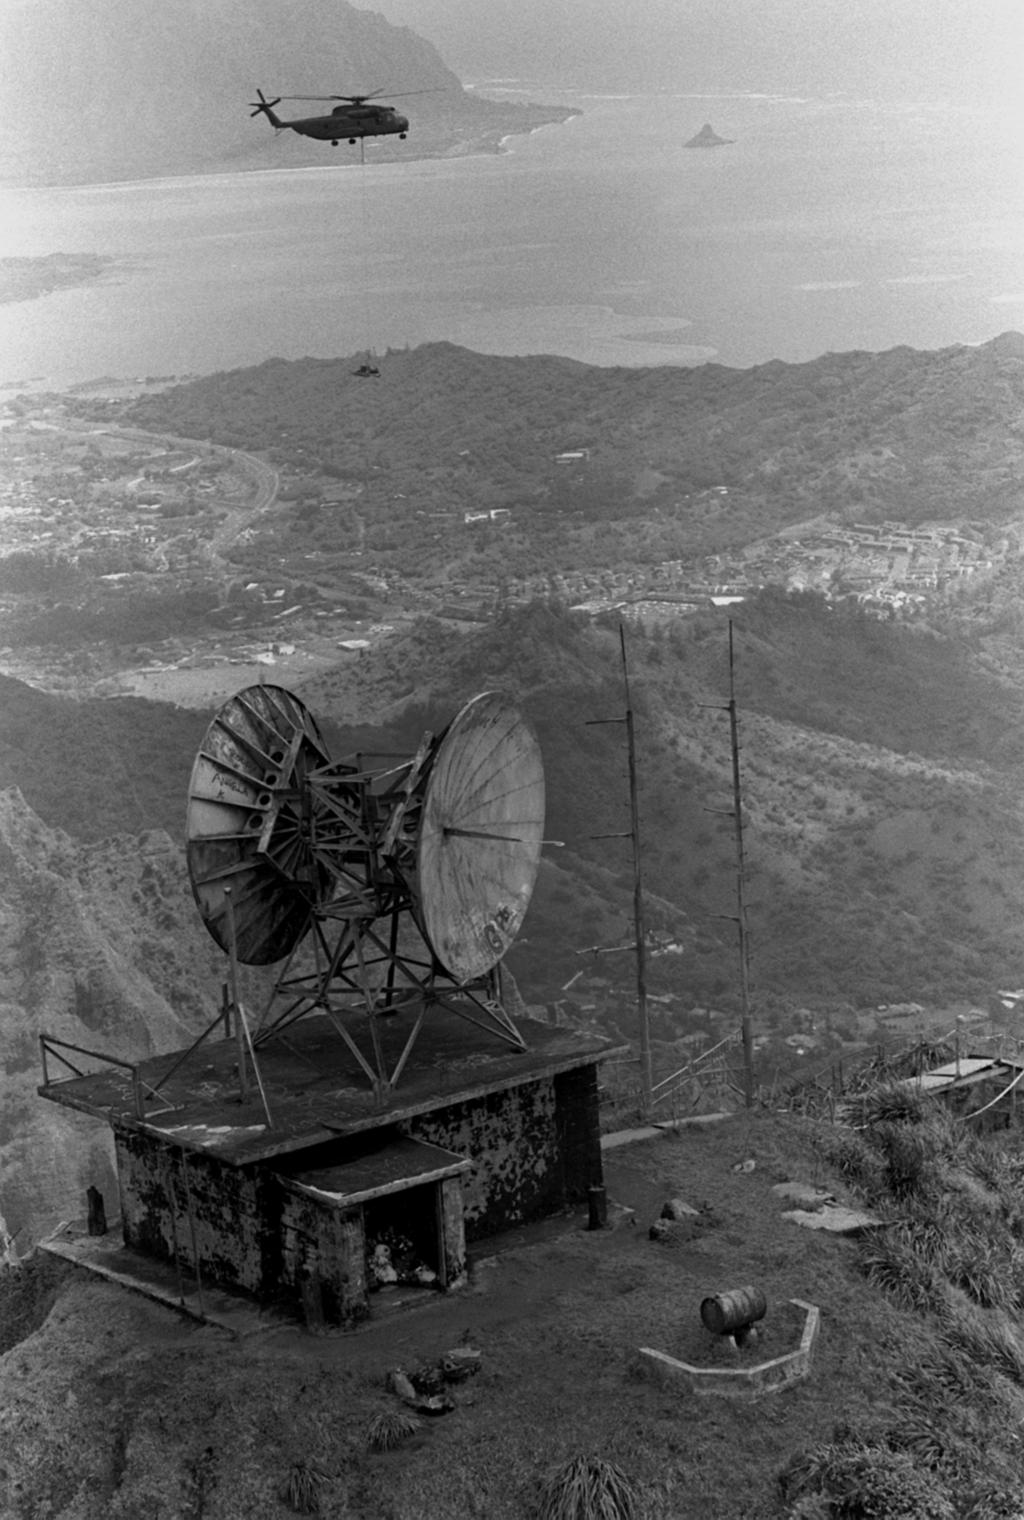 Történeti bevezető 1967 - Timation műholdak: nagyon pontos órák űrbe helyezése (1974-ben első atomóra űrbe vitele) 1970-es évek - OMEGA navigációs rendszer 10-14 khz frekvenciatartományban működő